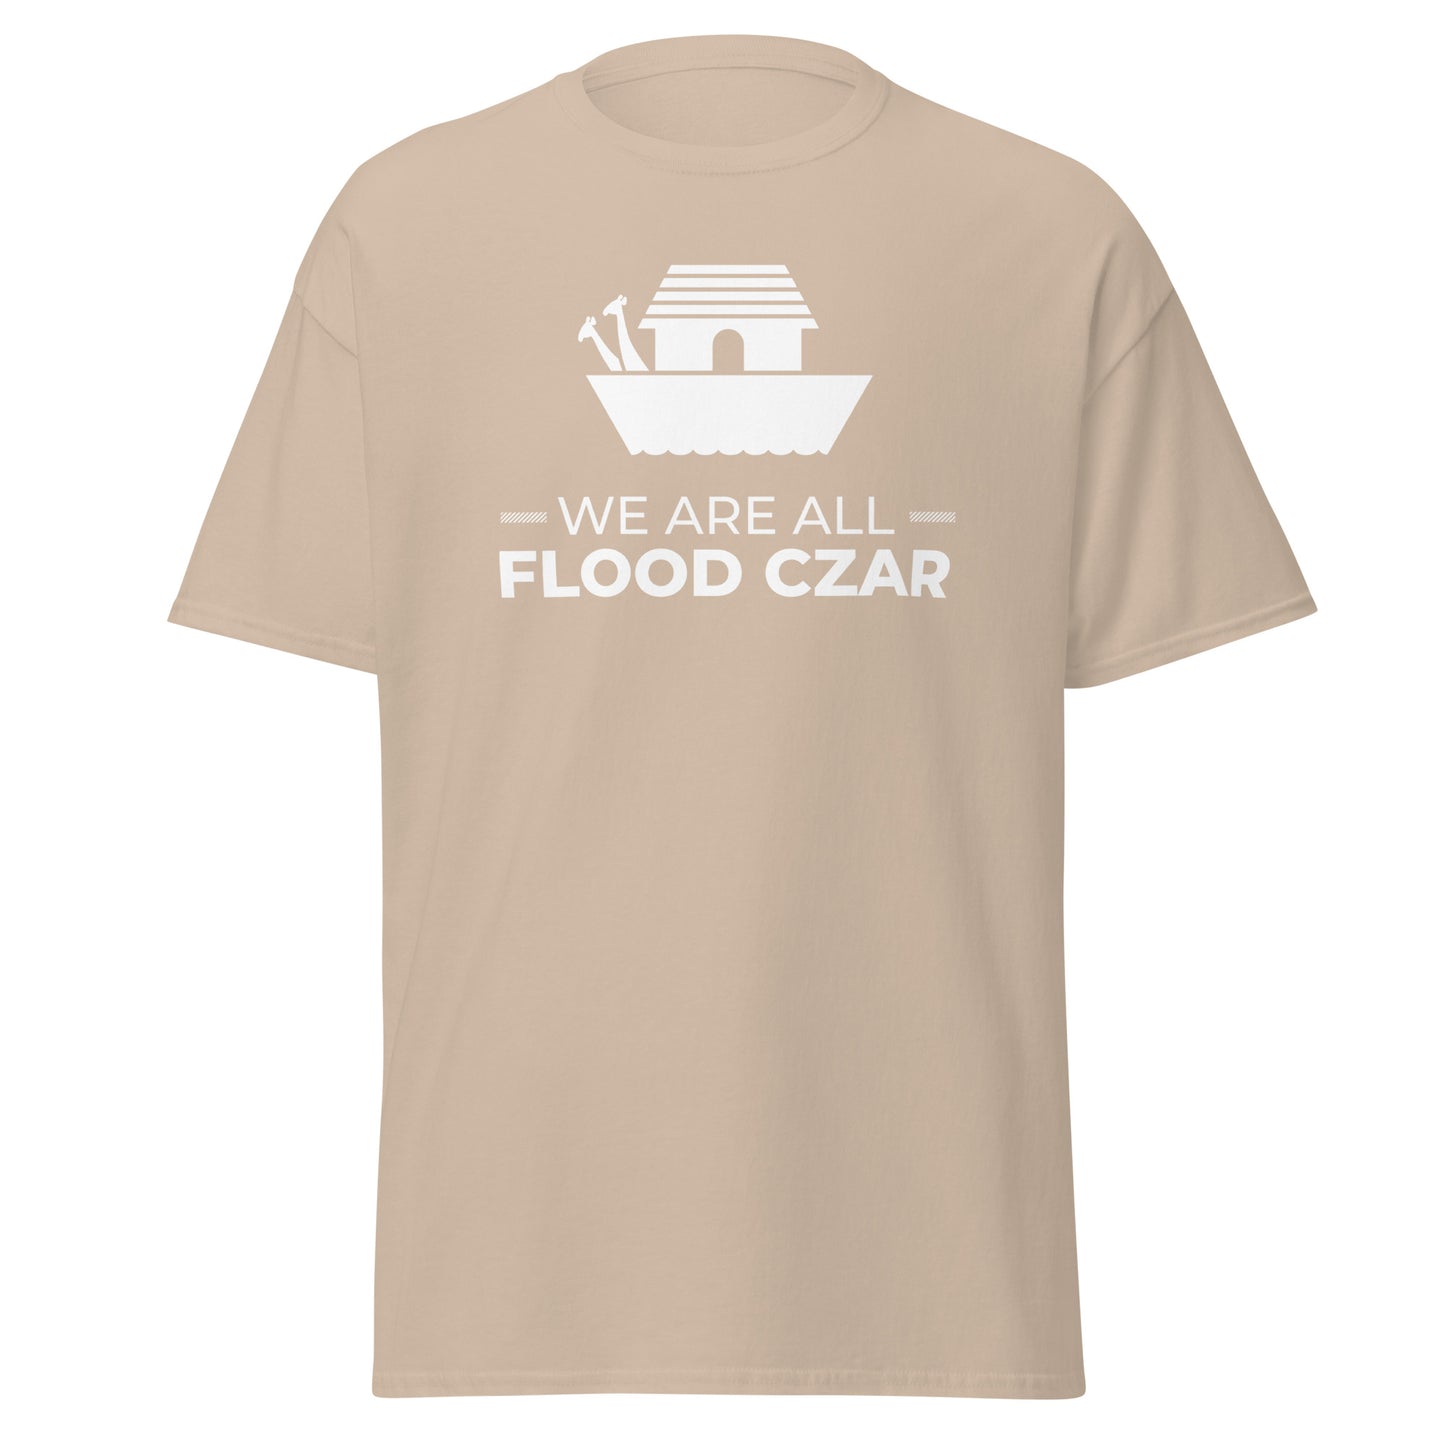 We Are All Flood Czar t-shirt